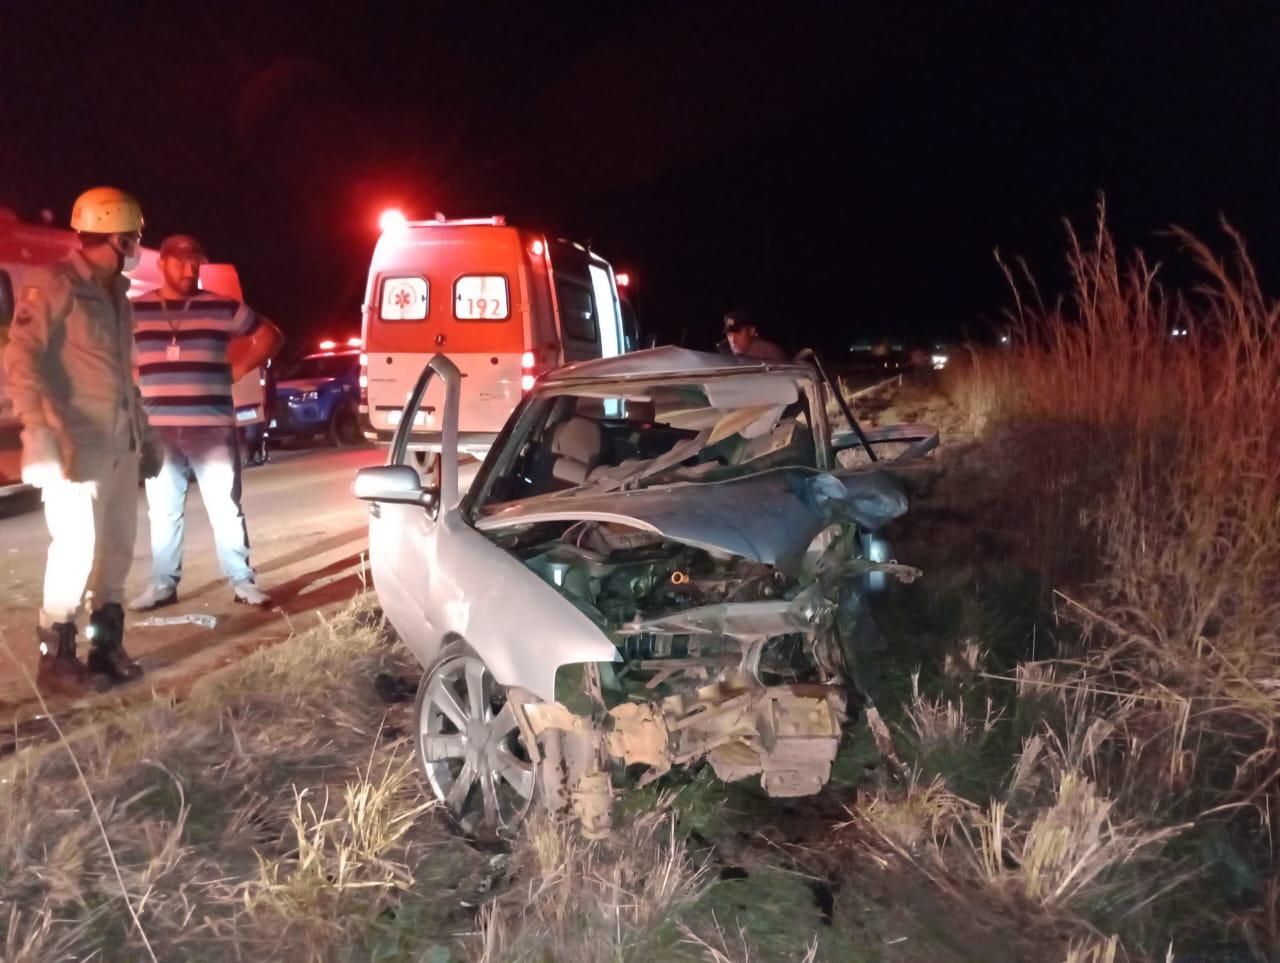 Imagens fortes: pilotos morrem em grave acidente em corrida no Paraná